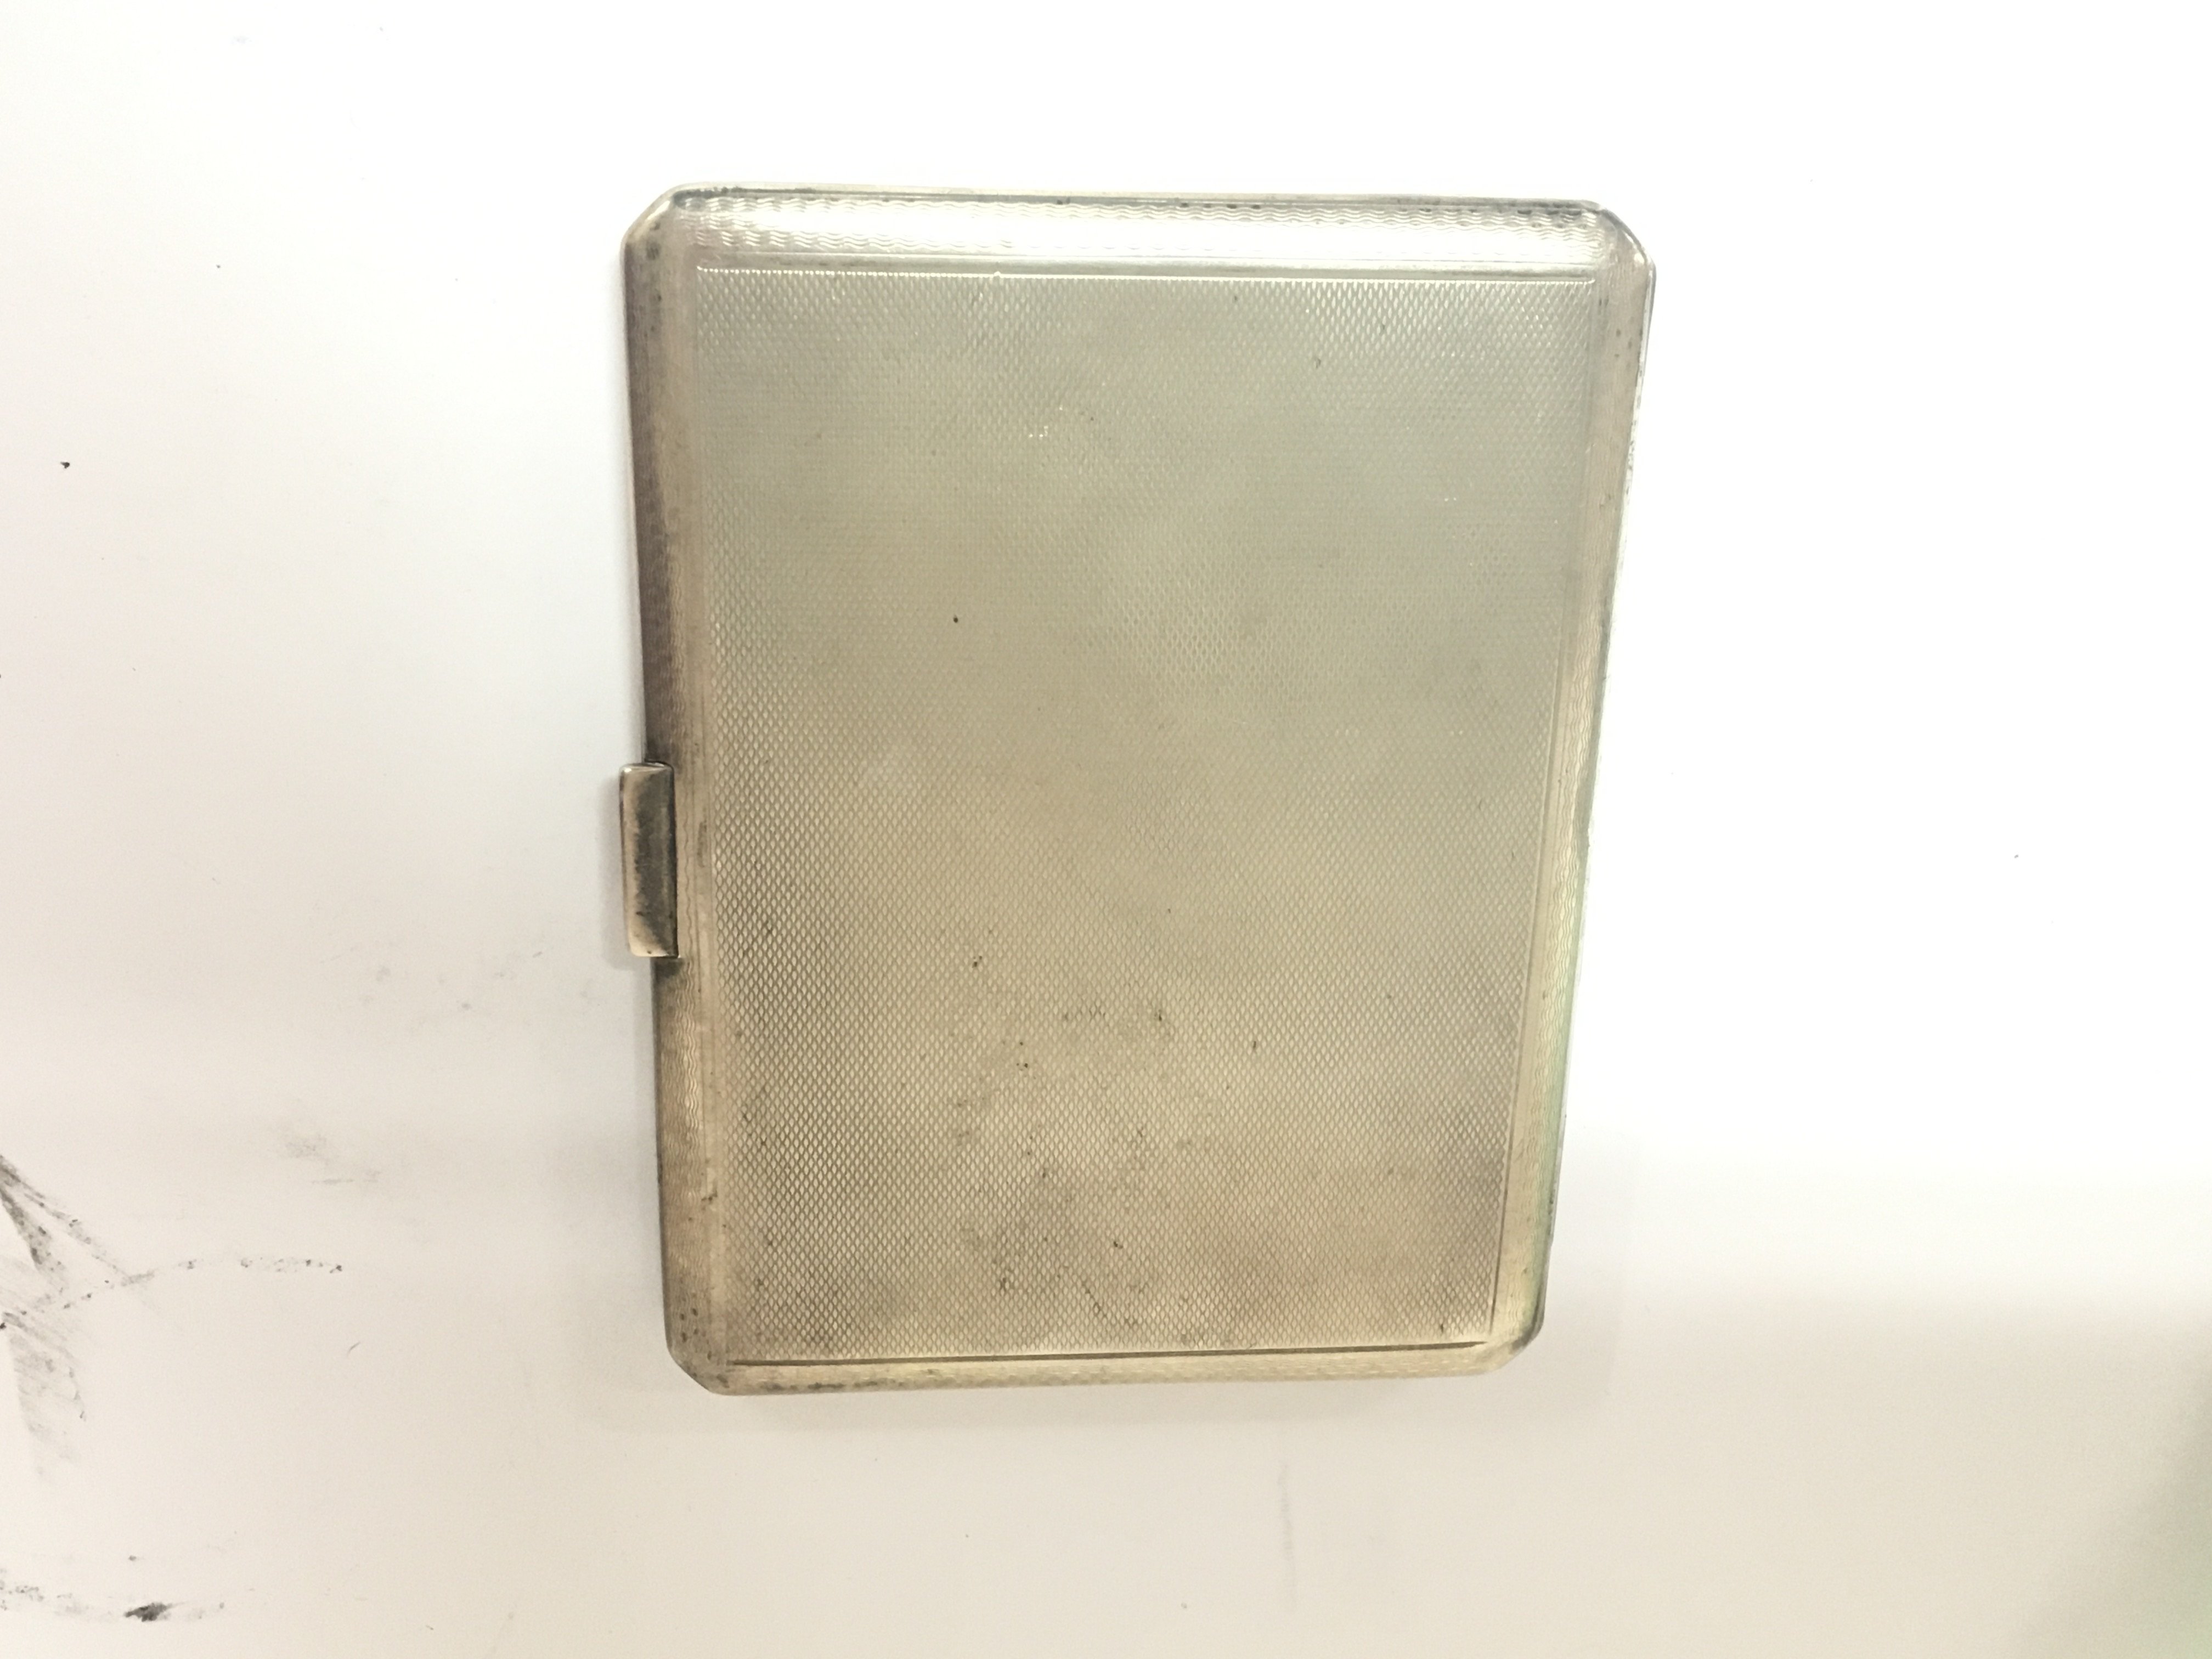 A Silver cigarette case maker Mappin Birmingham ha